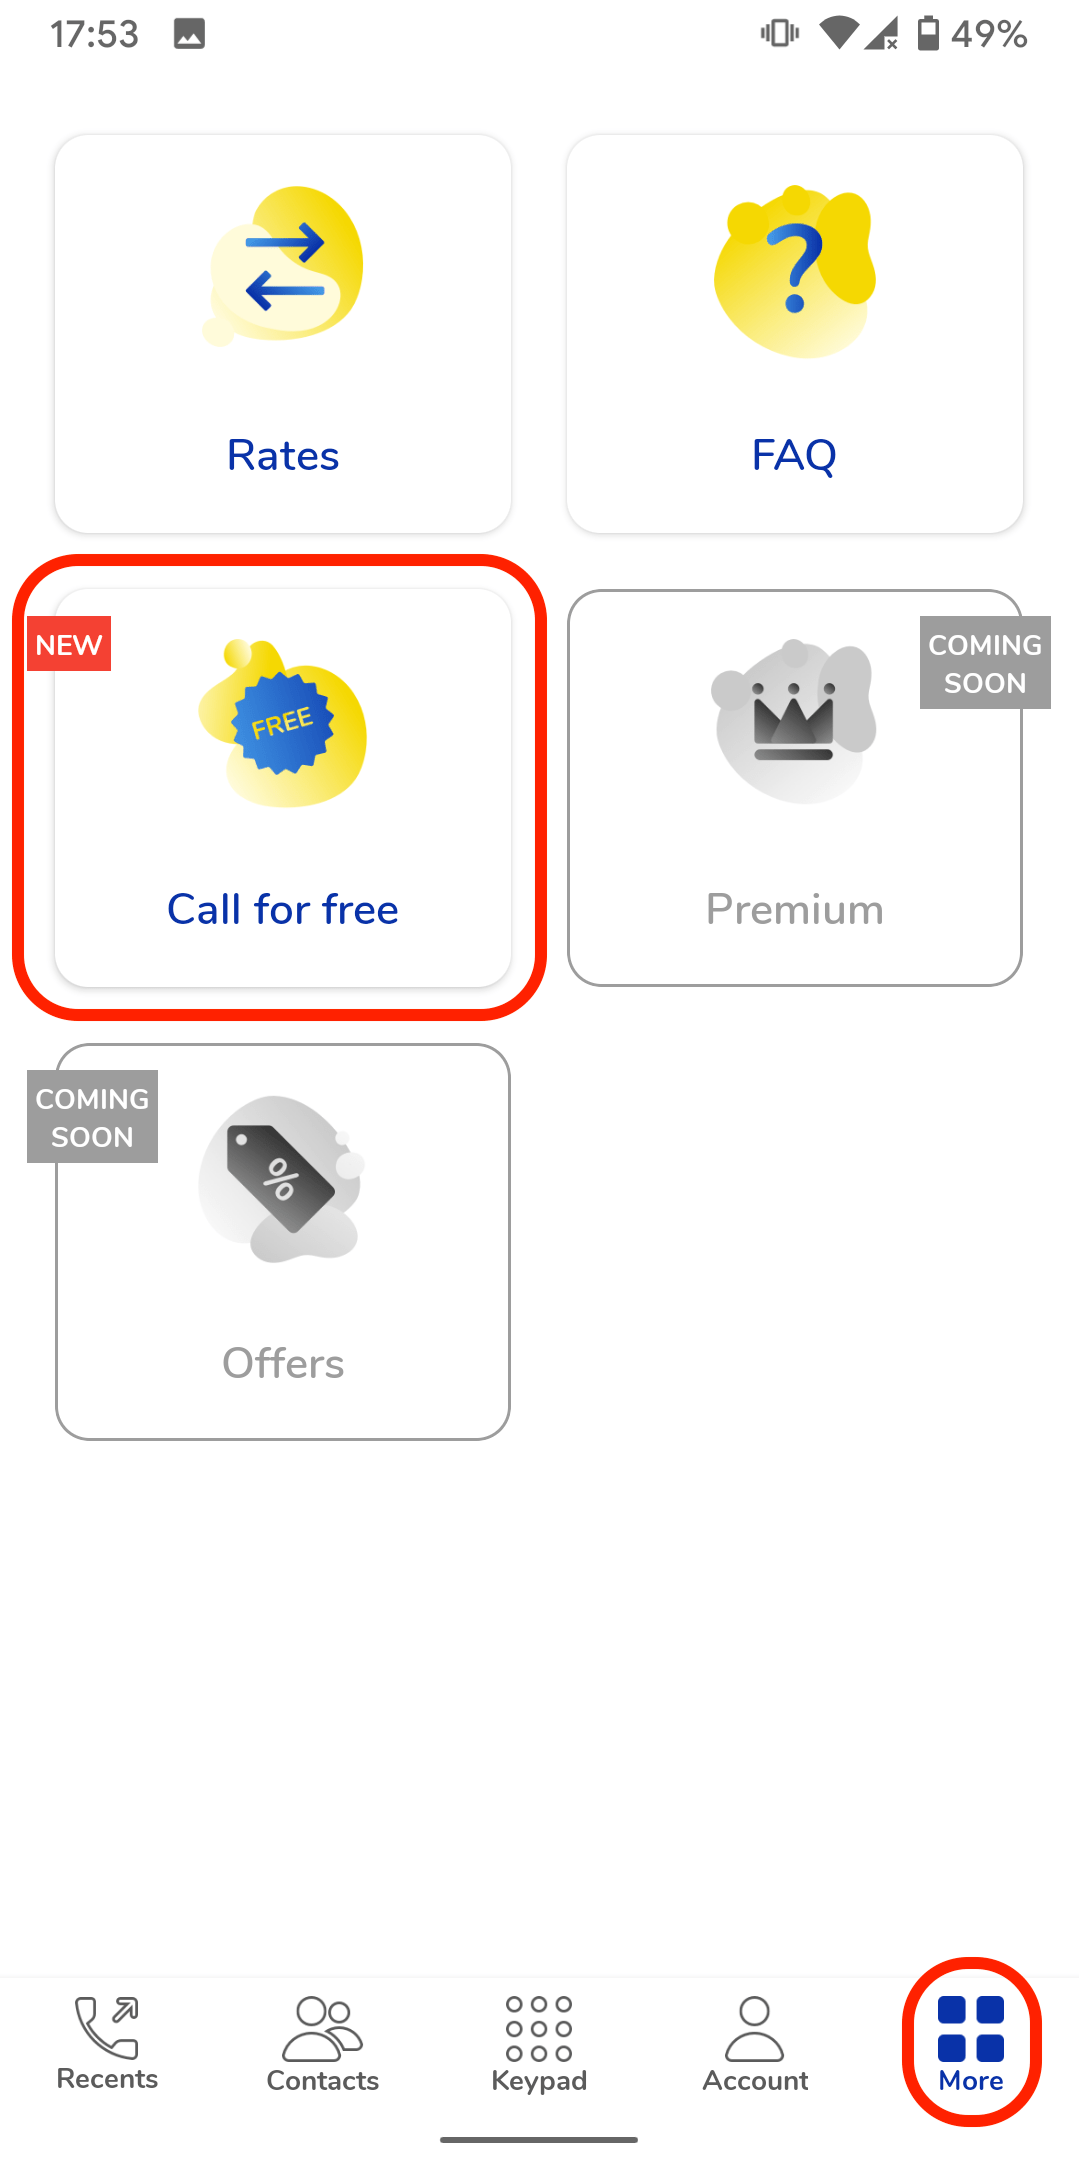 Free international calls MoreMins